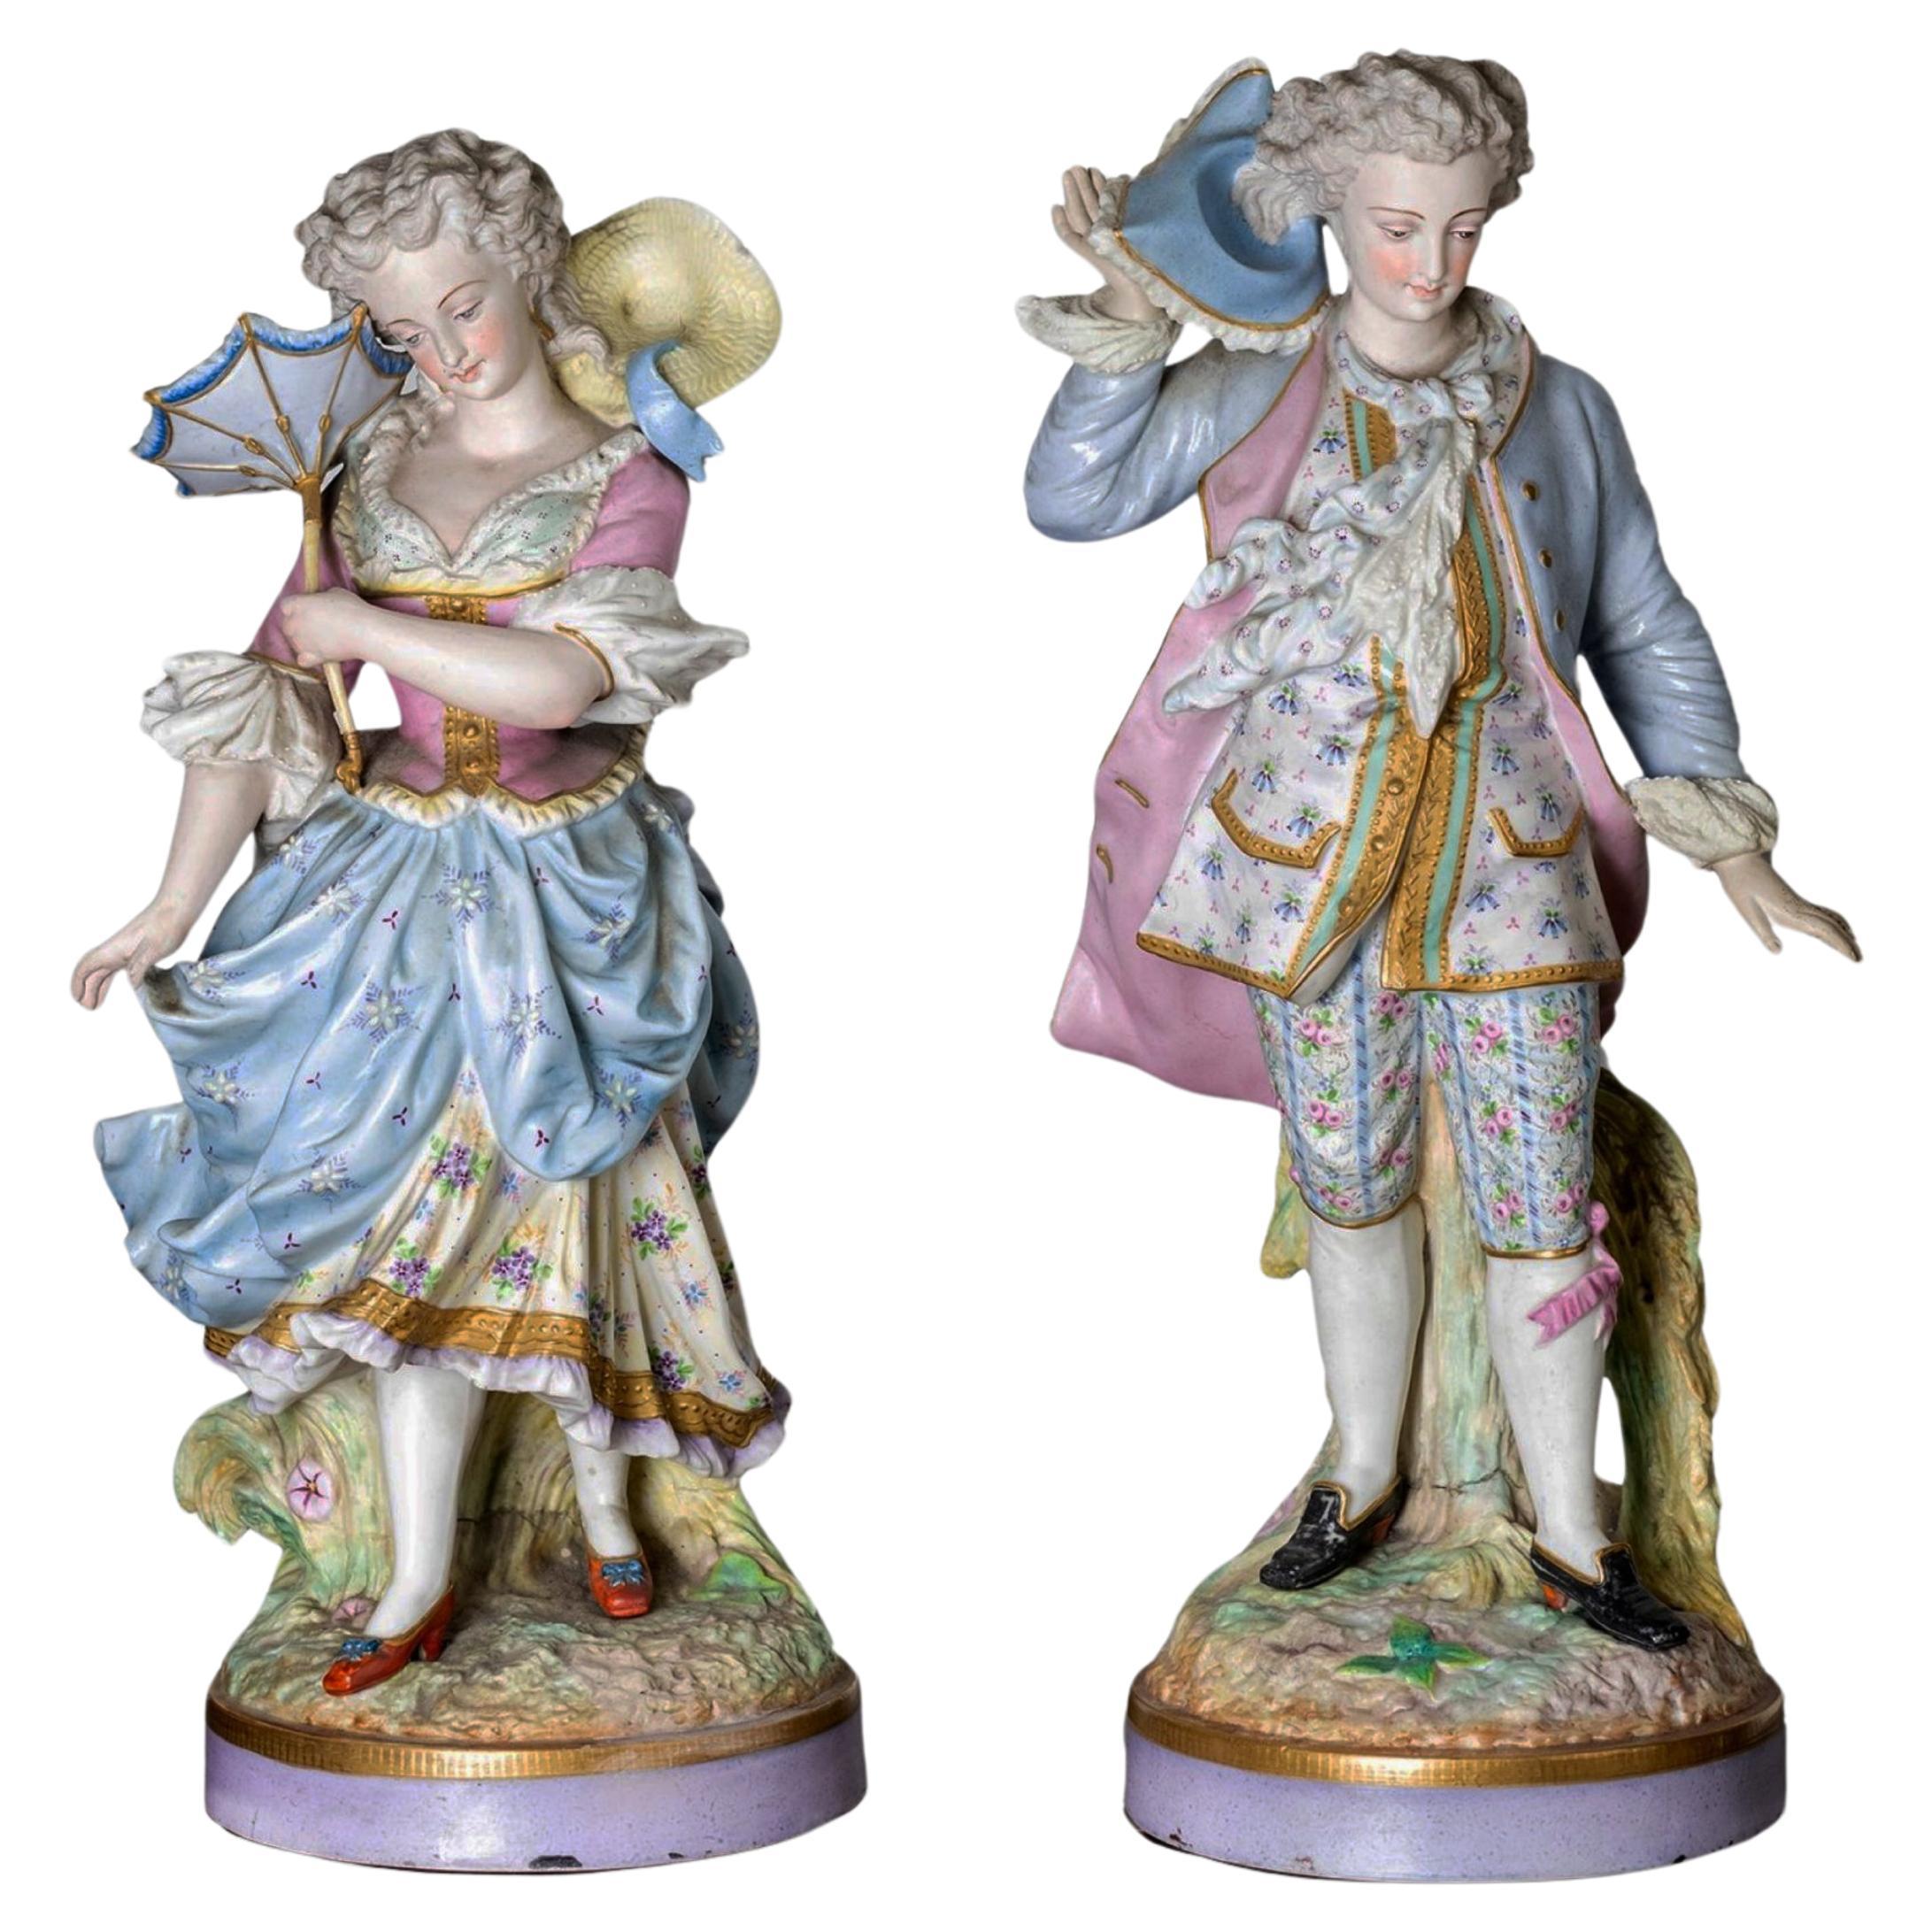 Alpinien Margaine Blue Limoges Porcelain Figurines, 19th Century For Sale